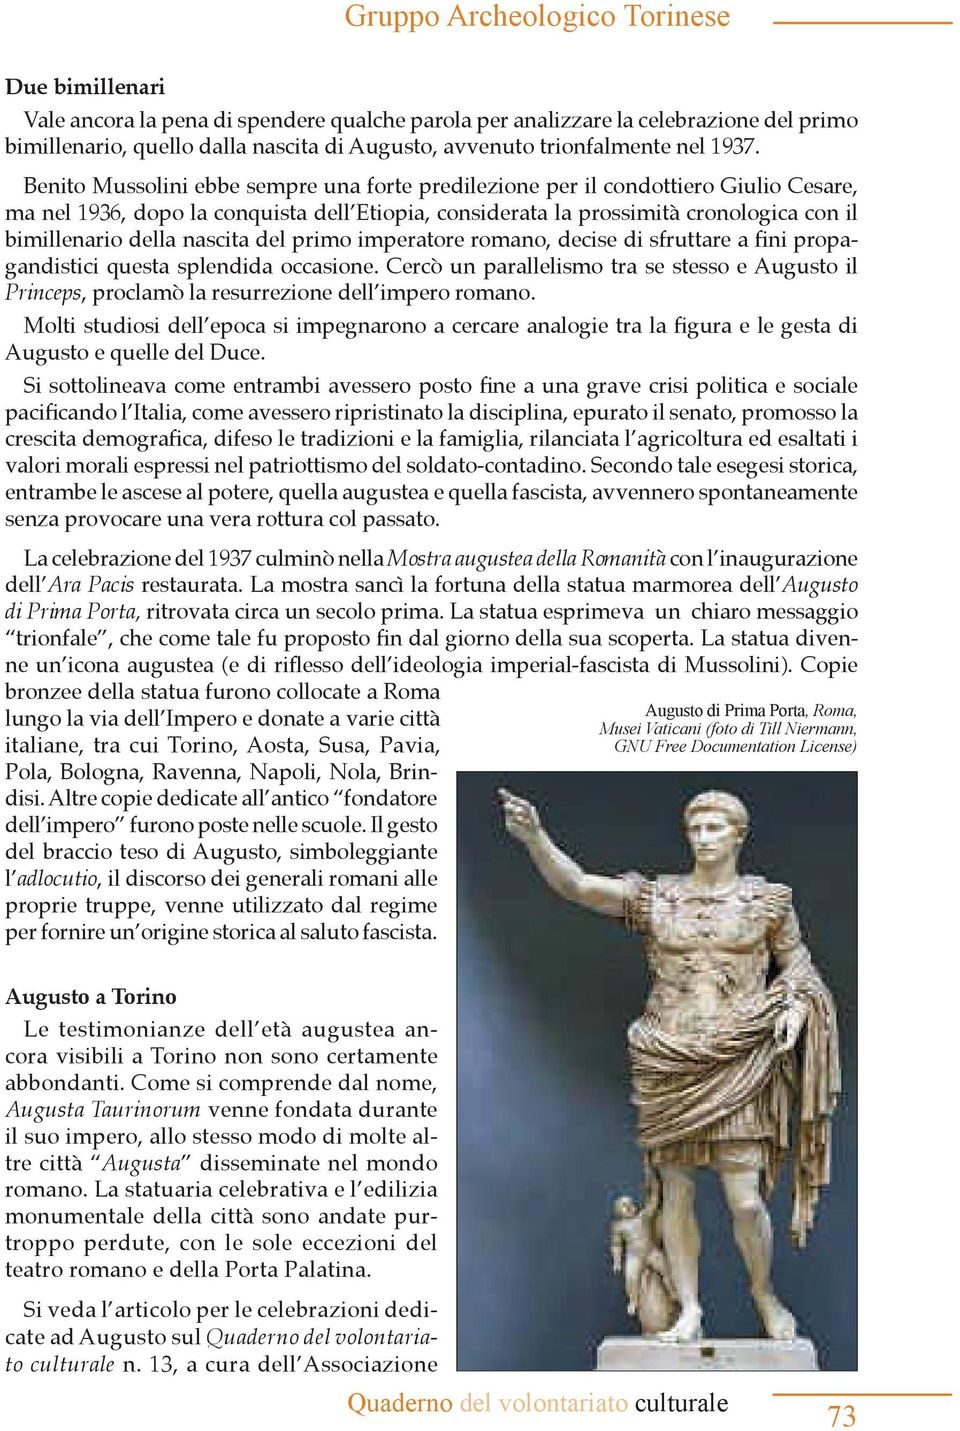 Mostra augustea della Romanità con l inaugurazione dell Ara Pacis Augusto di Prima Porta, - lungo la via dell Impero e donate a varie città - dell impero furono poste nelle scuole.